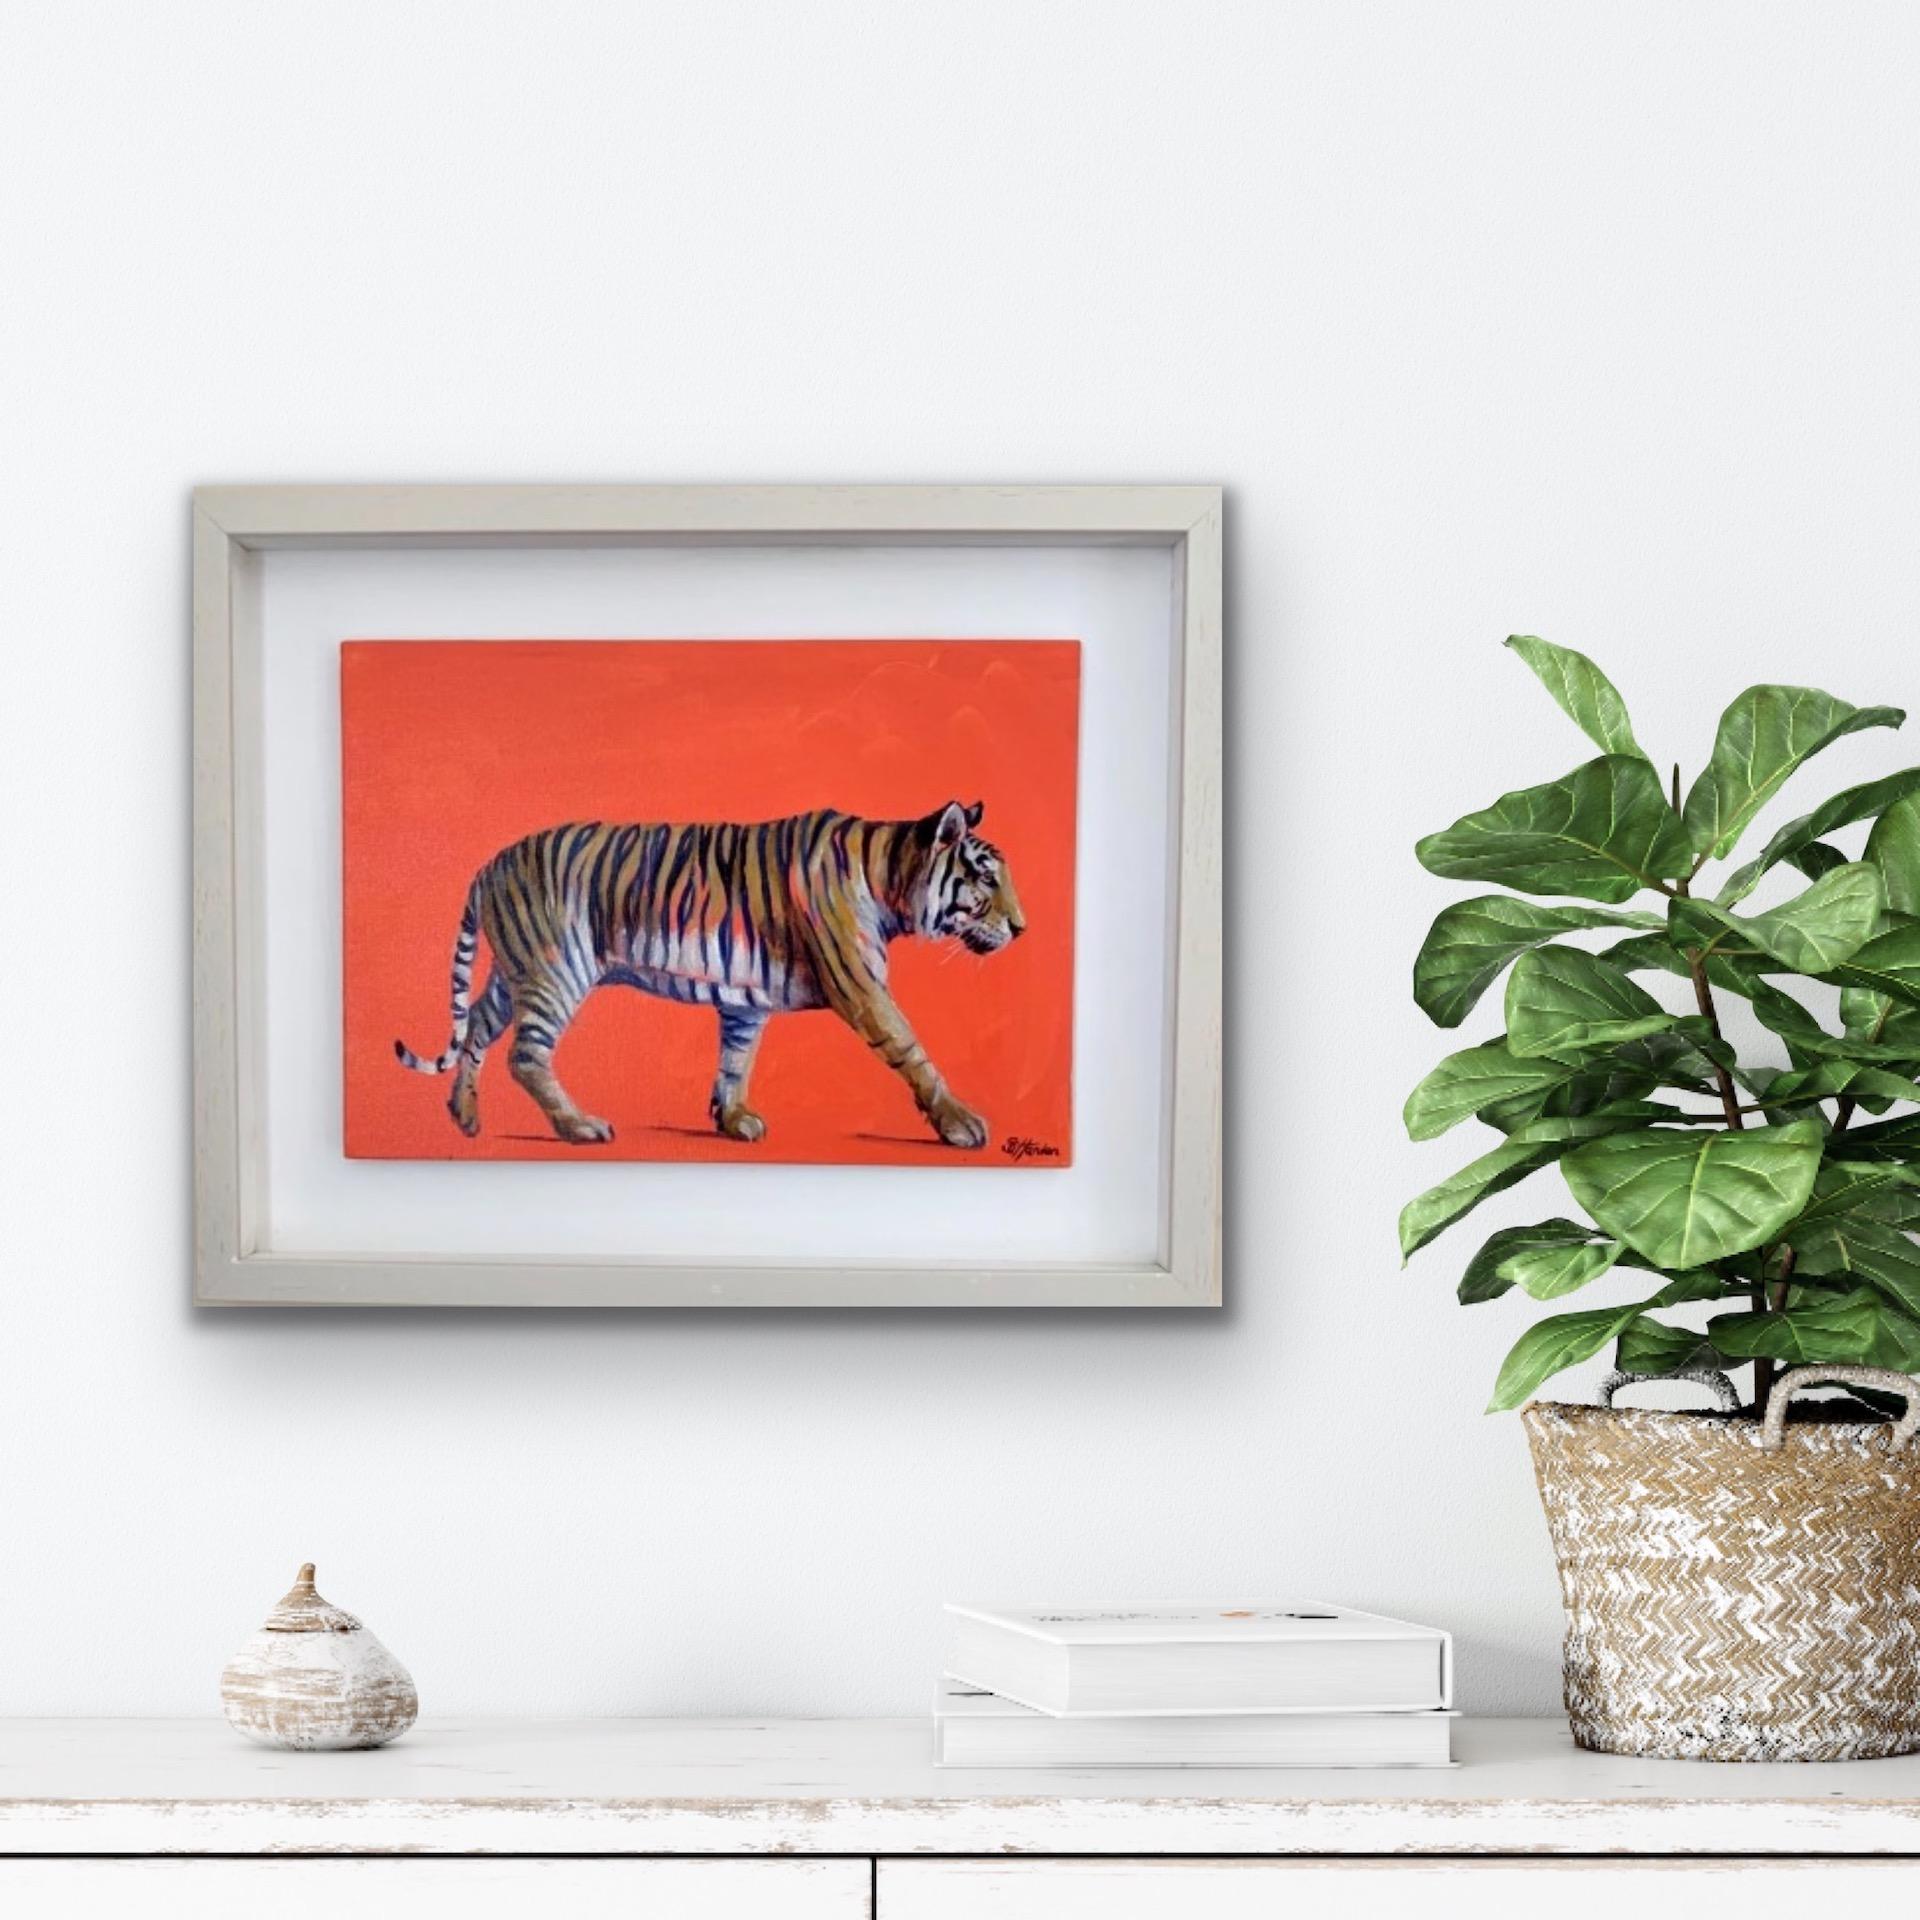 Sophie Harden, Tiger Tiger Burning Bright, Original Contemporary Tiger Painting 2